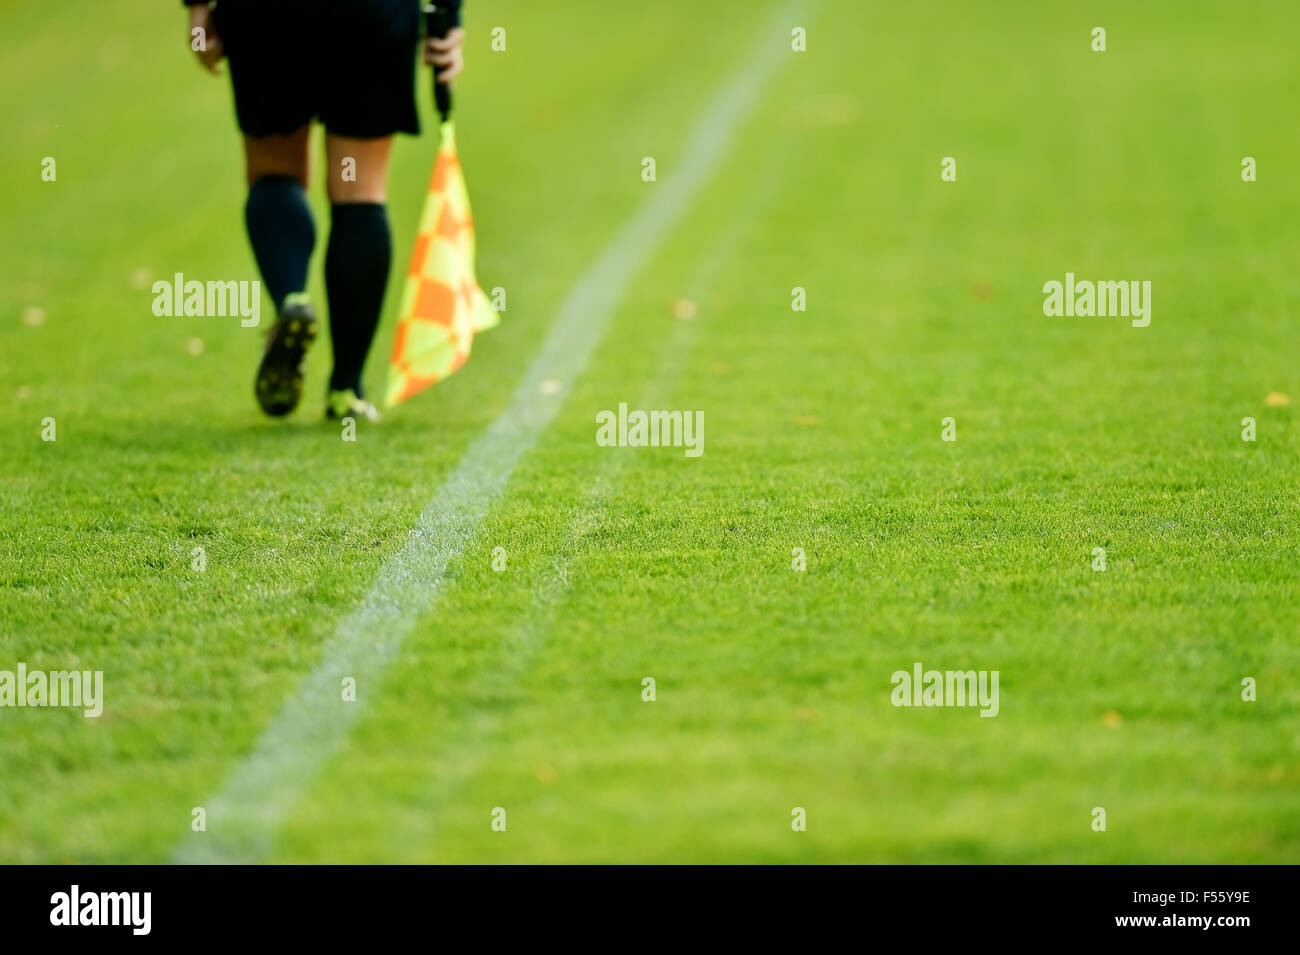 Árbitro asistente ejecutando junto al margen durante un partido de fútbol Foto de stock